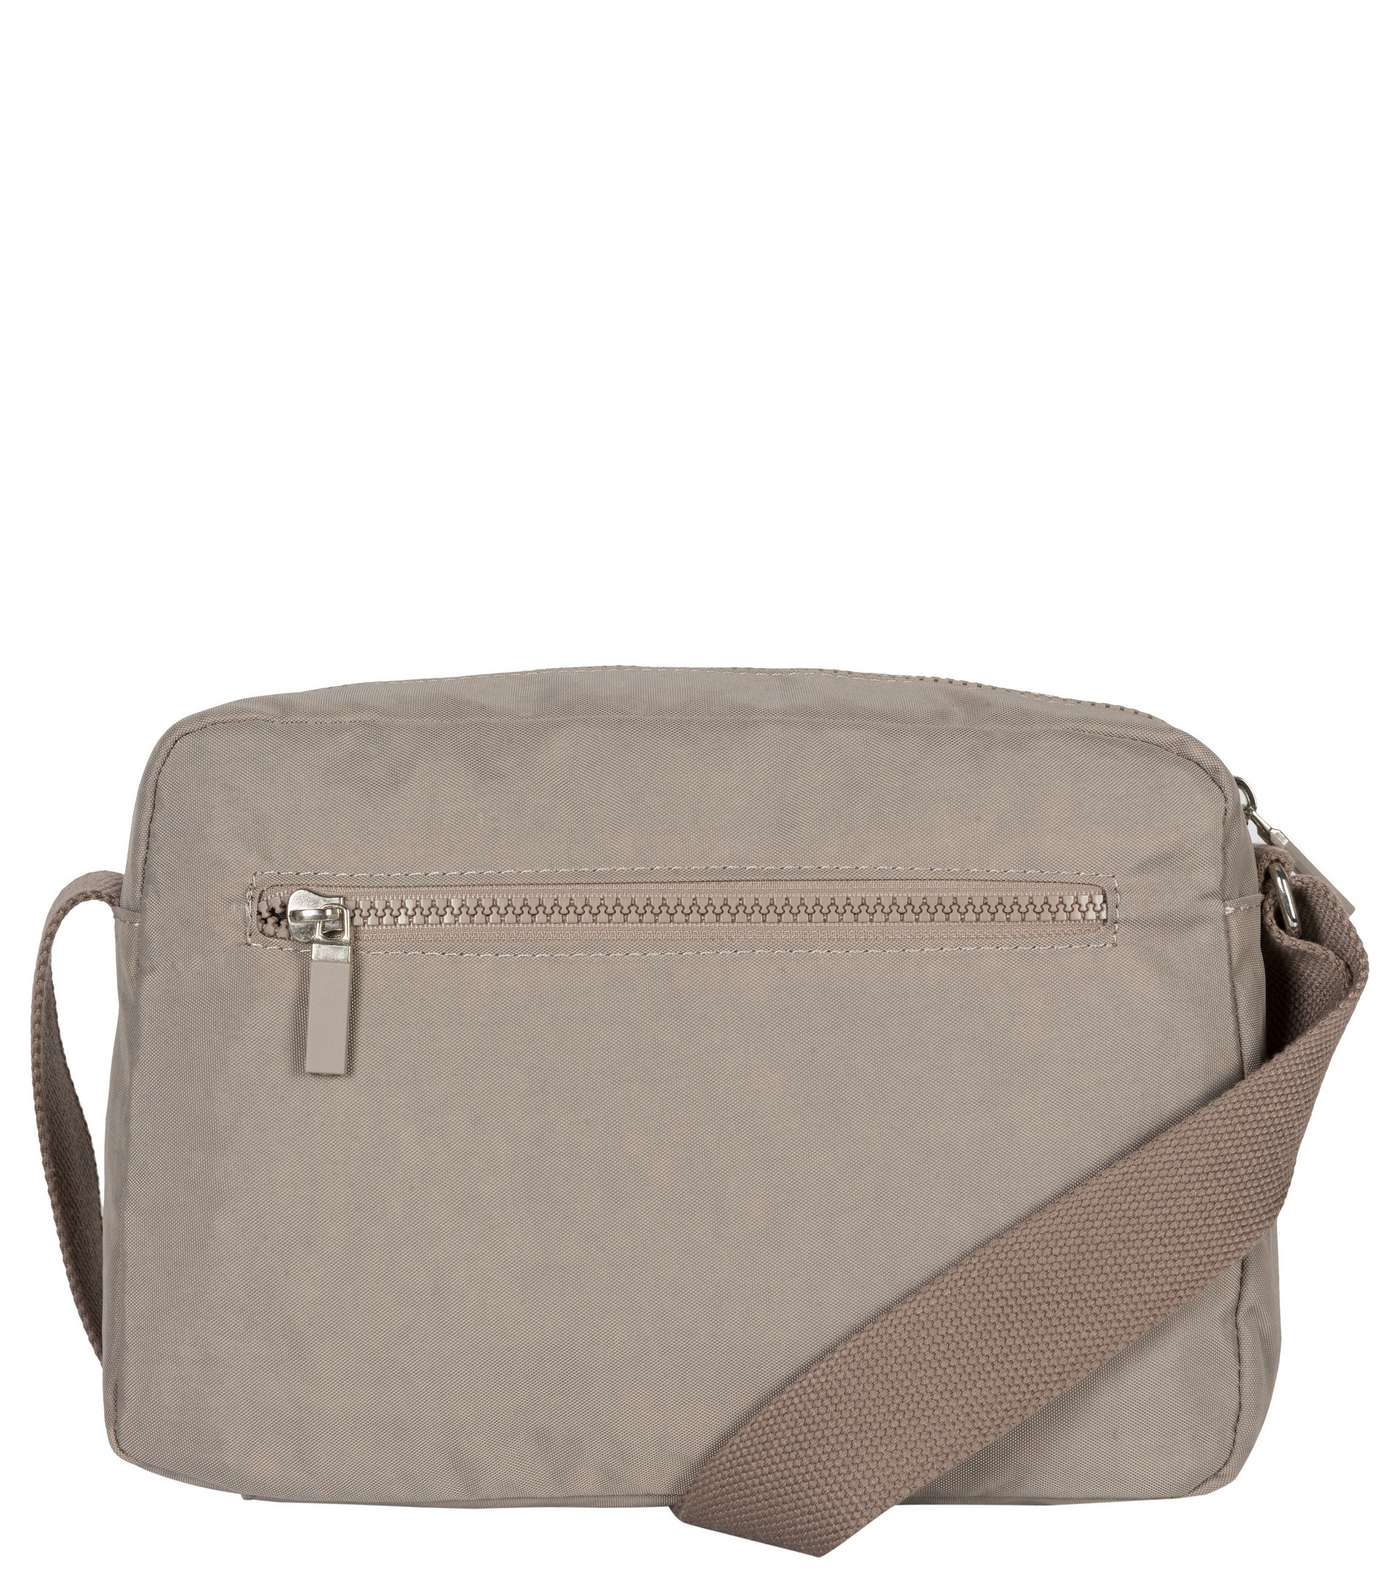 Artsac Grey Double Zip Pocket Cross Body Bag Image 3